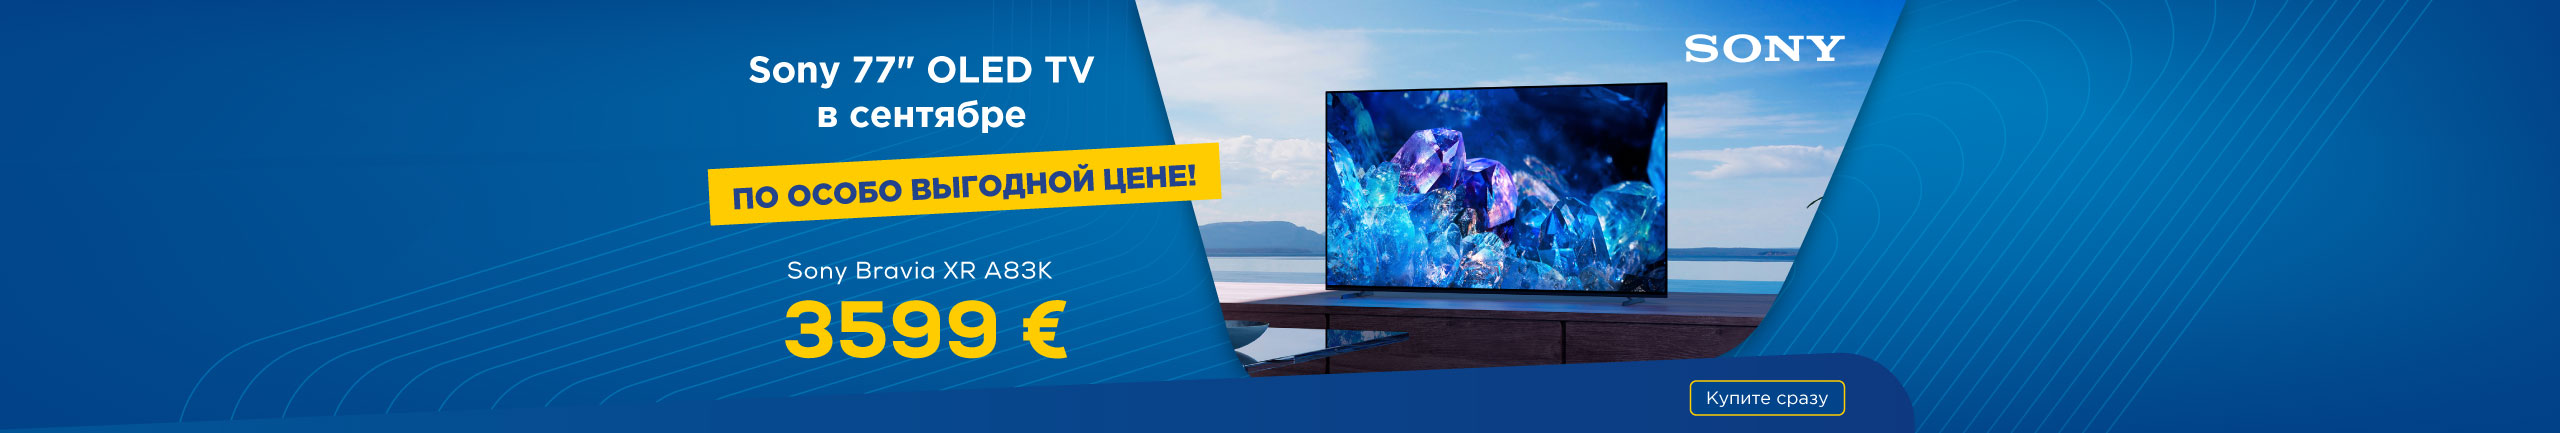 Sony 77" OLED TV в сентябре по особо выгодной цене!